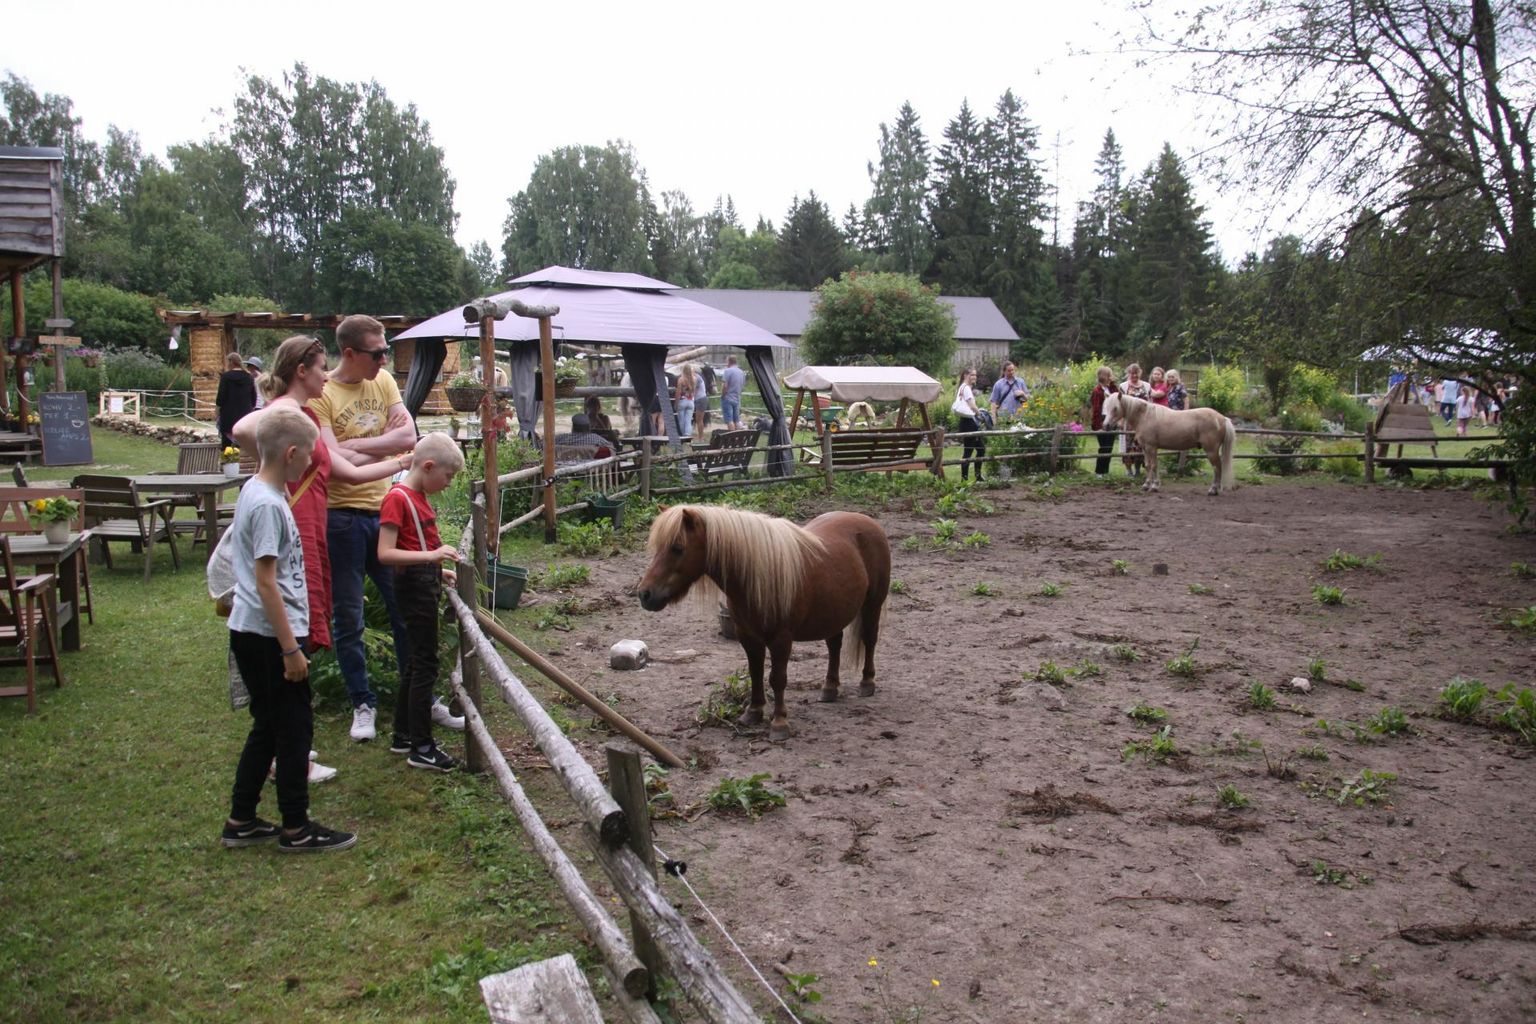 Lisaks hobuste ja ponide vaatamisele sai avatud talude päeval soovi korral ratsudega ka sõita.